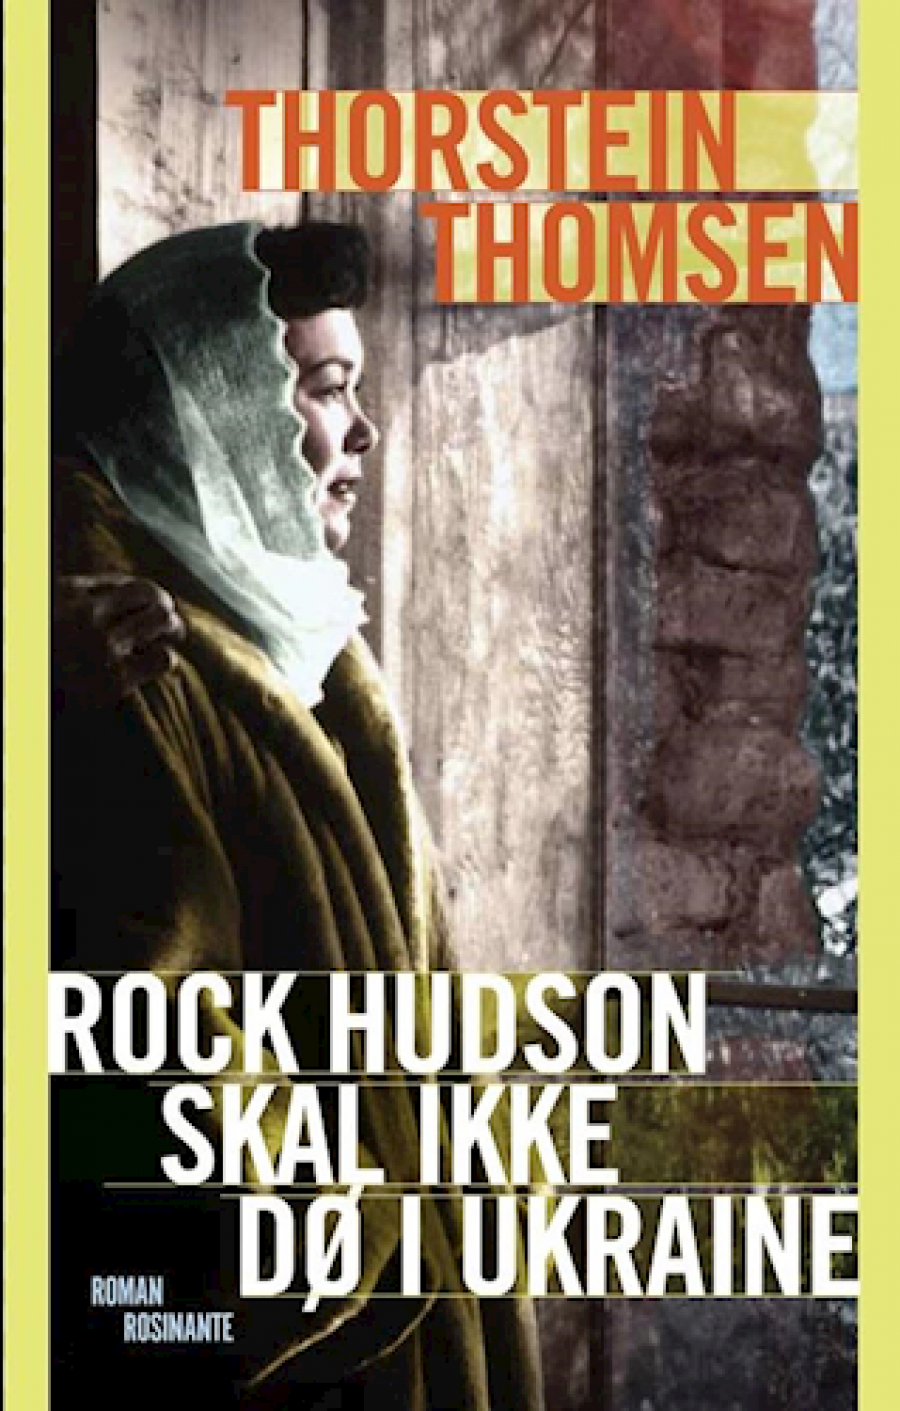 Rock Hudson skal ikke dø i Ukraine af Thorstein Thomsen